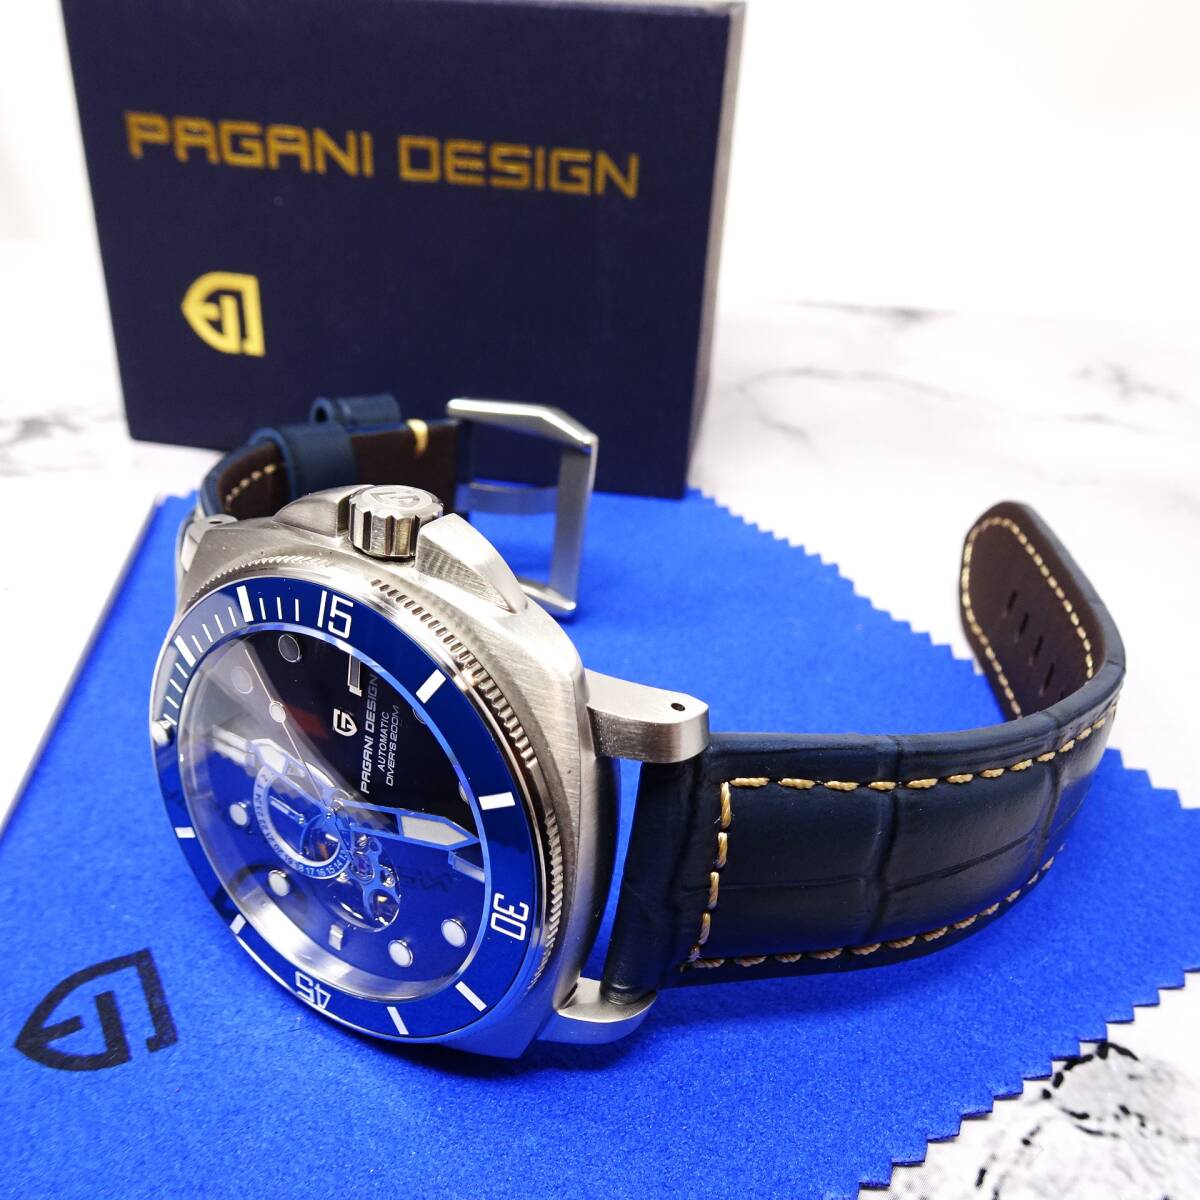 送料無料〓新品〓腕時計 パガーニデザイン PAGANI DESIGN 機械式・NH39Ａ・オープンハート・オマージュウォッチ・サファイア・PD-1736の画像2